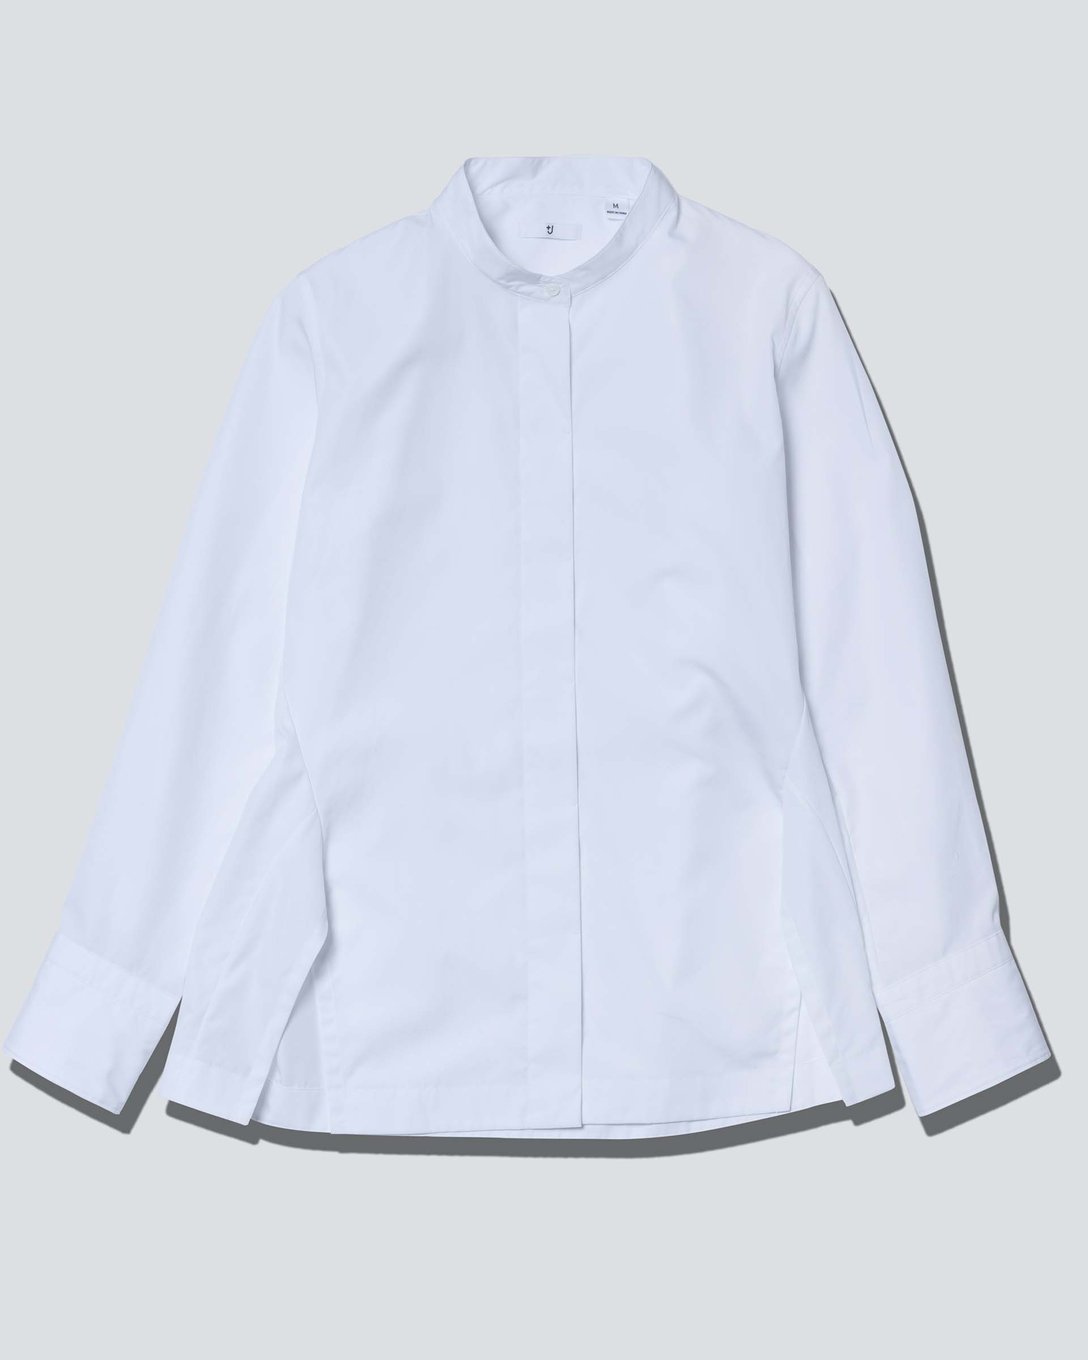 スーピマコットンスタンドカラーシャツ（長袖）（ホワイト、3990円） Image by FASHIONSNAP